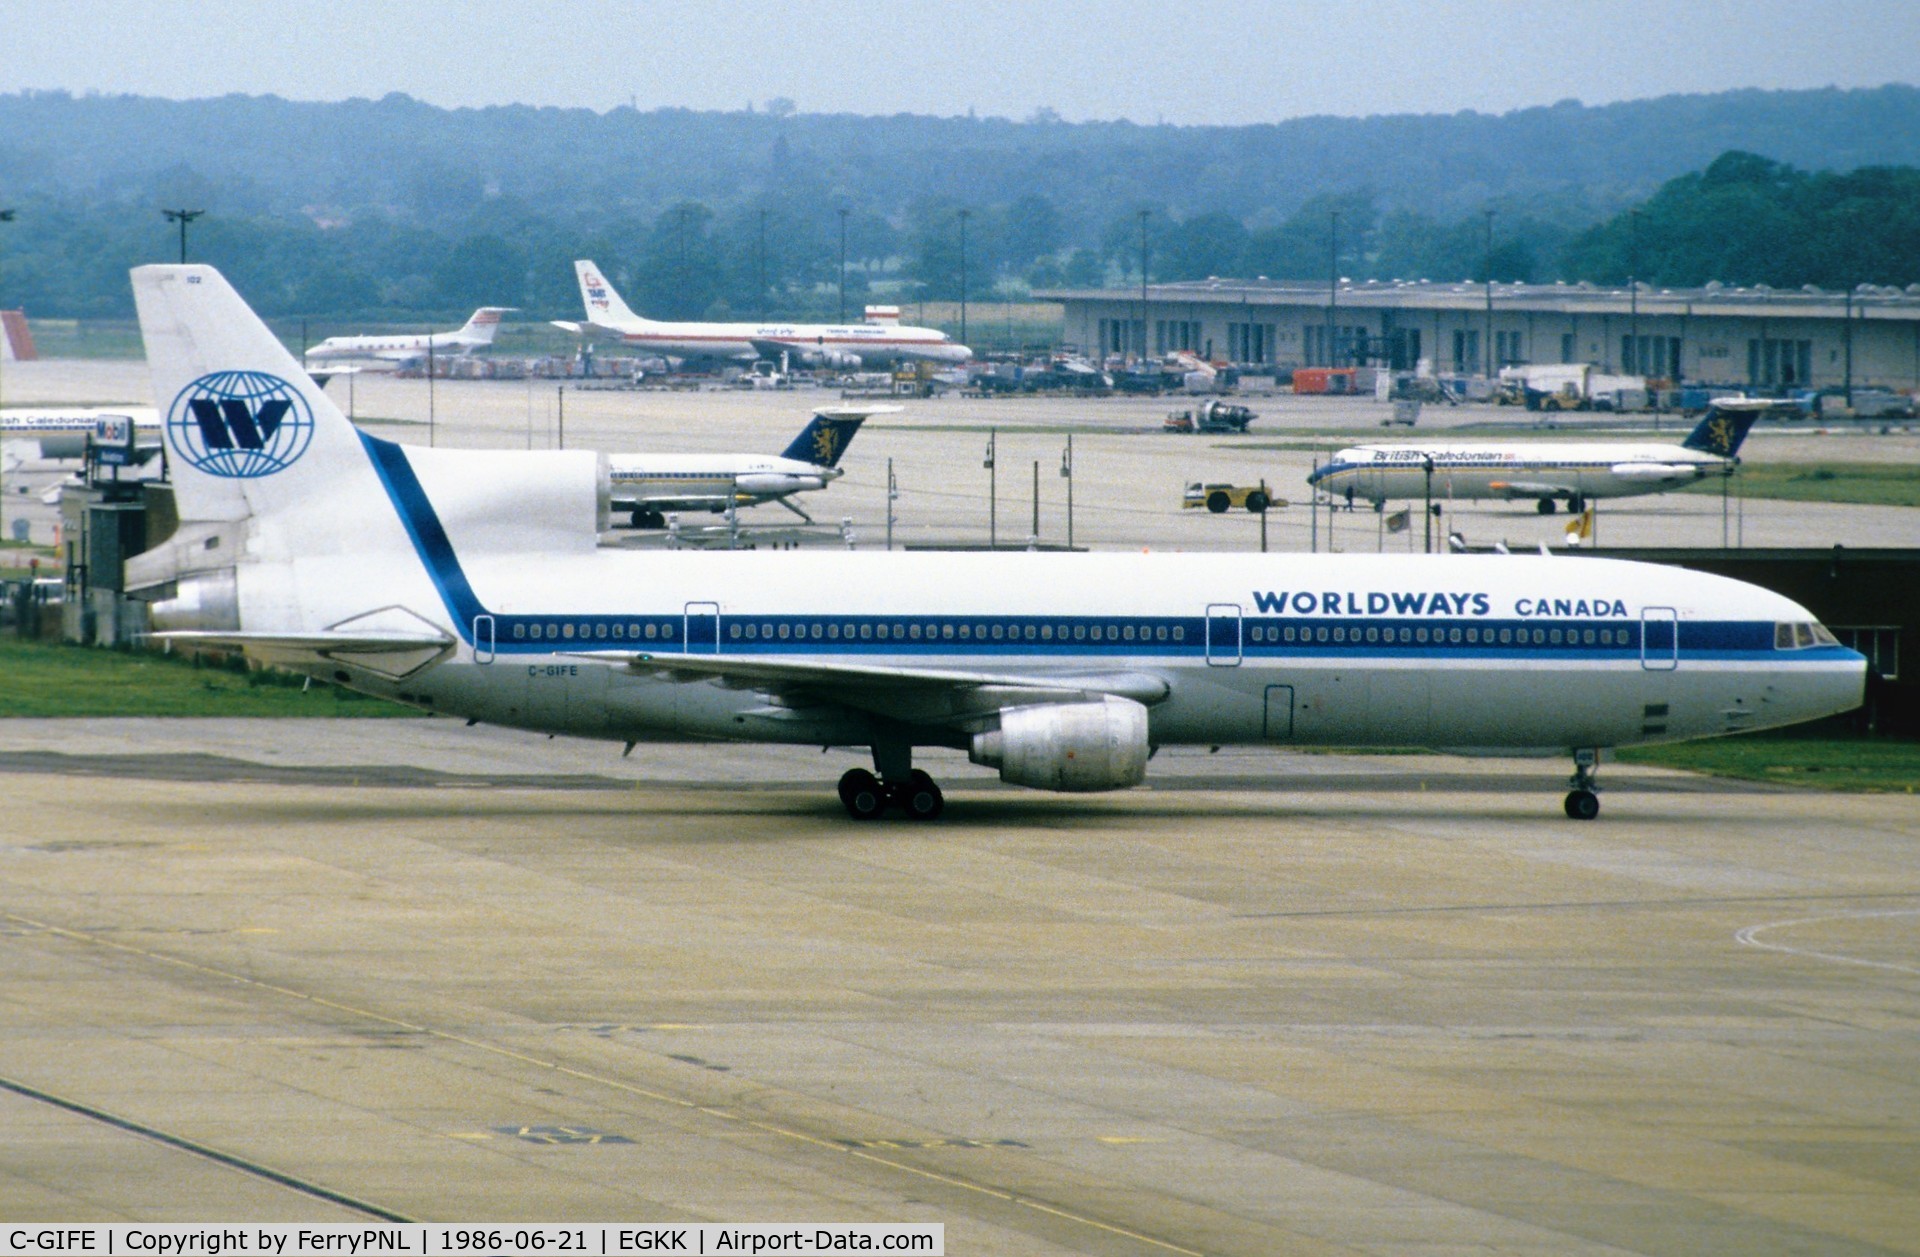 C-GIFE, 1974 Lockheed L-1011-385-1-14 TriStar 100 C/N 193L-1079, Worldways L1011 taxyiing in